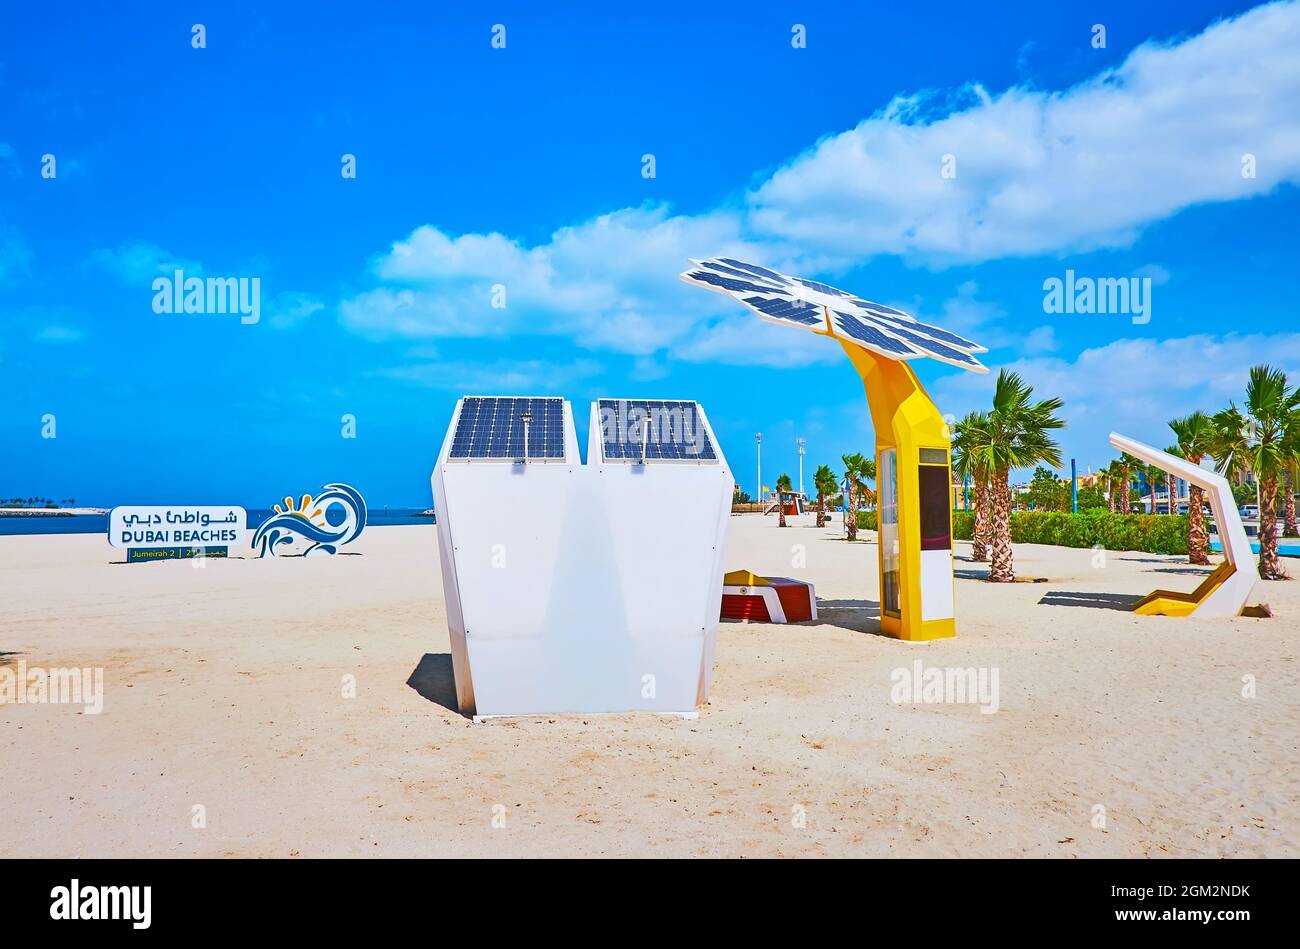 Jumeirah Beach est équipée de chargeurs solaires et de palmiers intelligents, offrant WIFI et points de recharge, Dubaï, Émirats Arabes Unis Banque D'Images